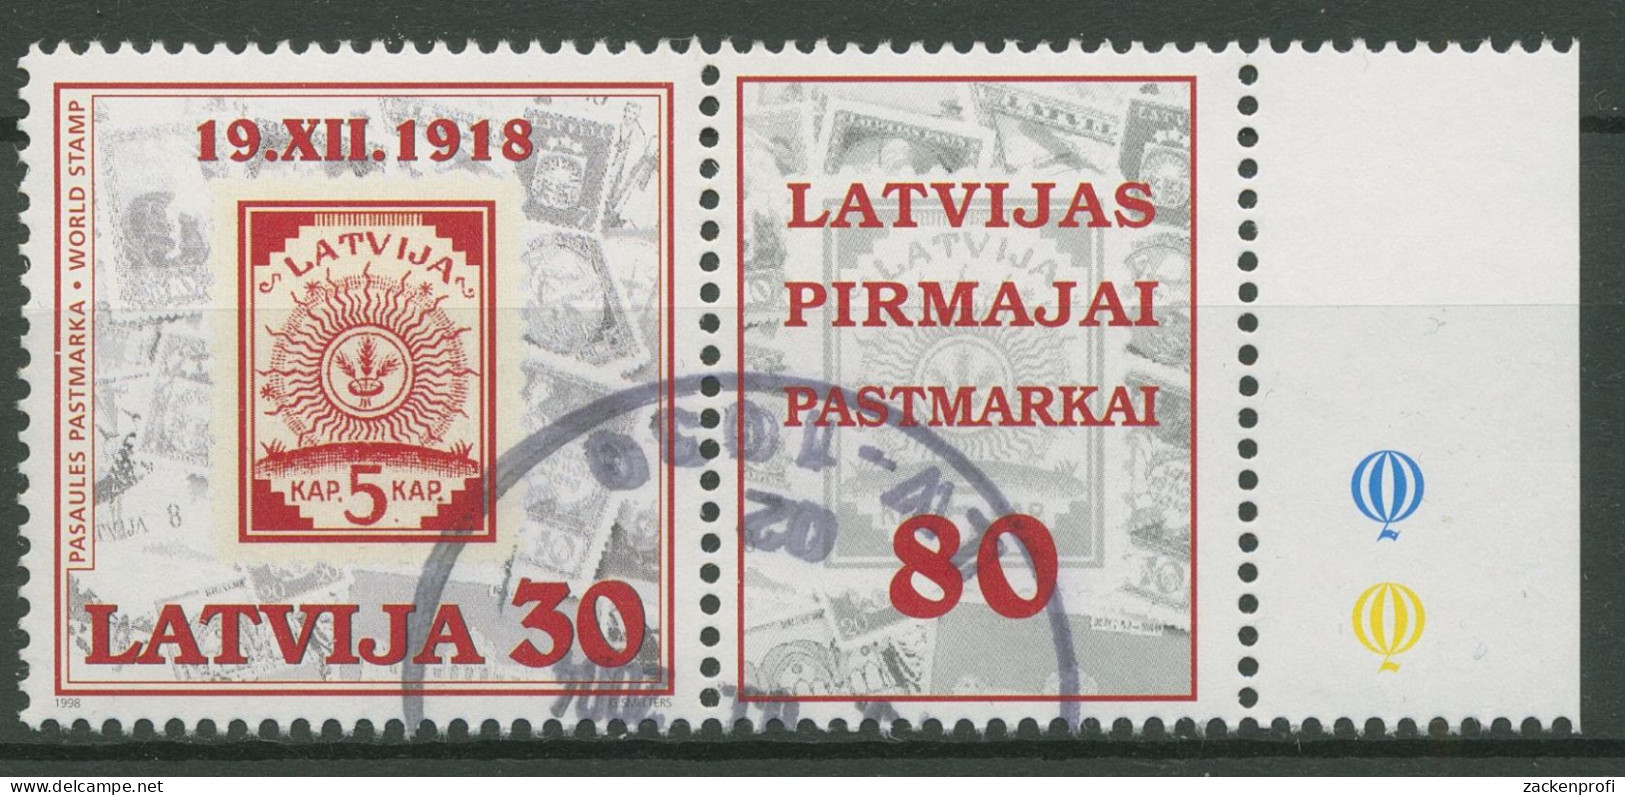 Lettland 1998 80 Jahre Briefmarken MiNr.2 Ähren Im Sonnenkreis 487 Zf Gestempelt - Lettonie